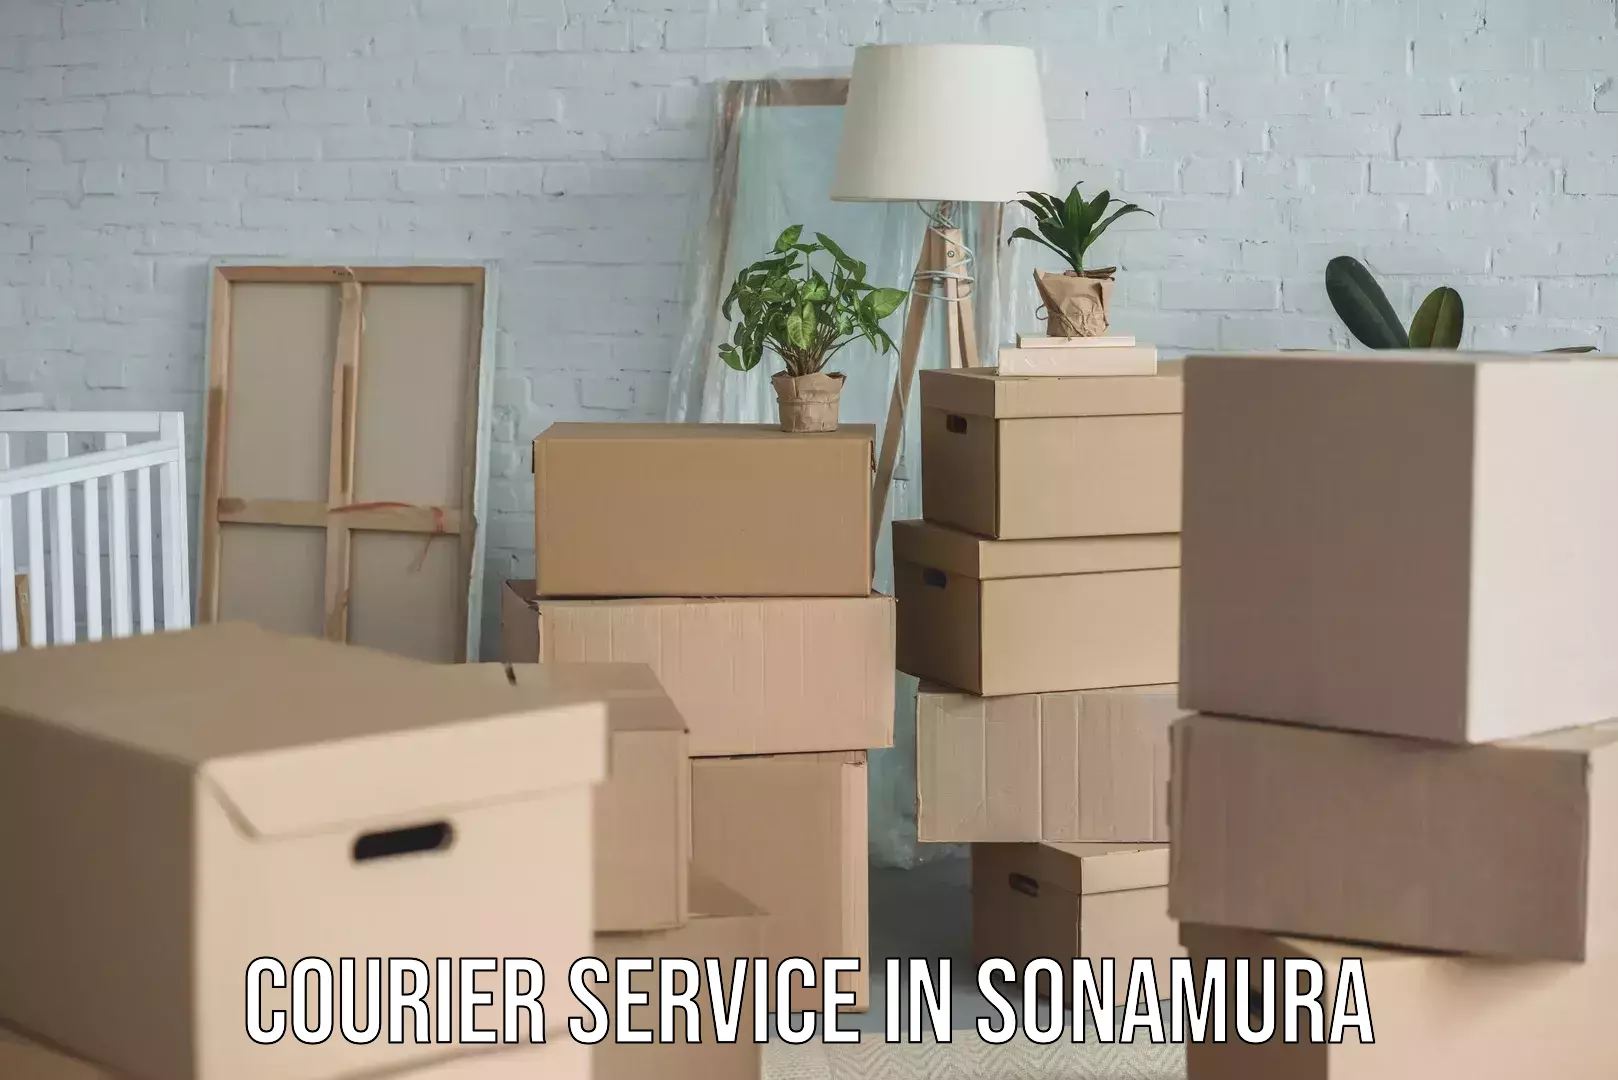 Regular parcel service in Sonamura